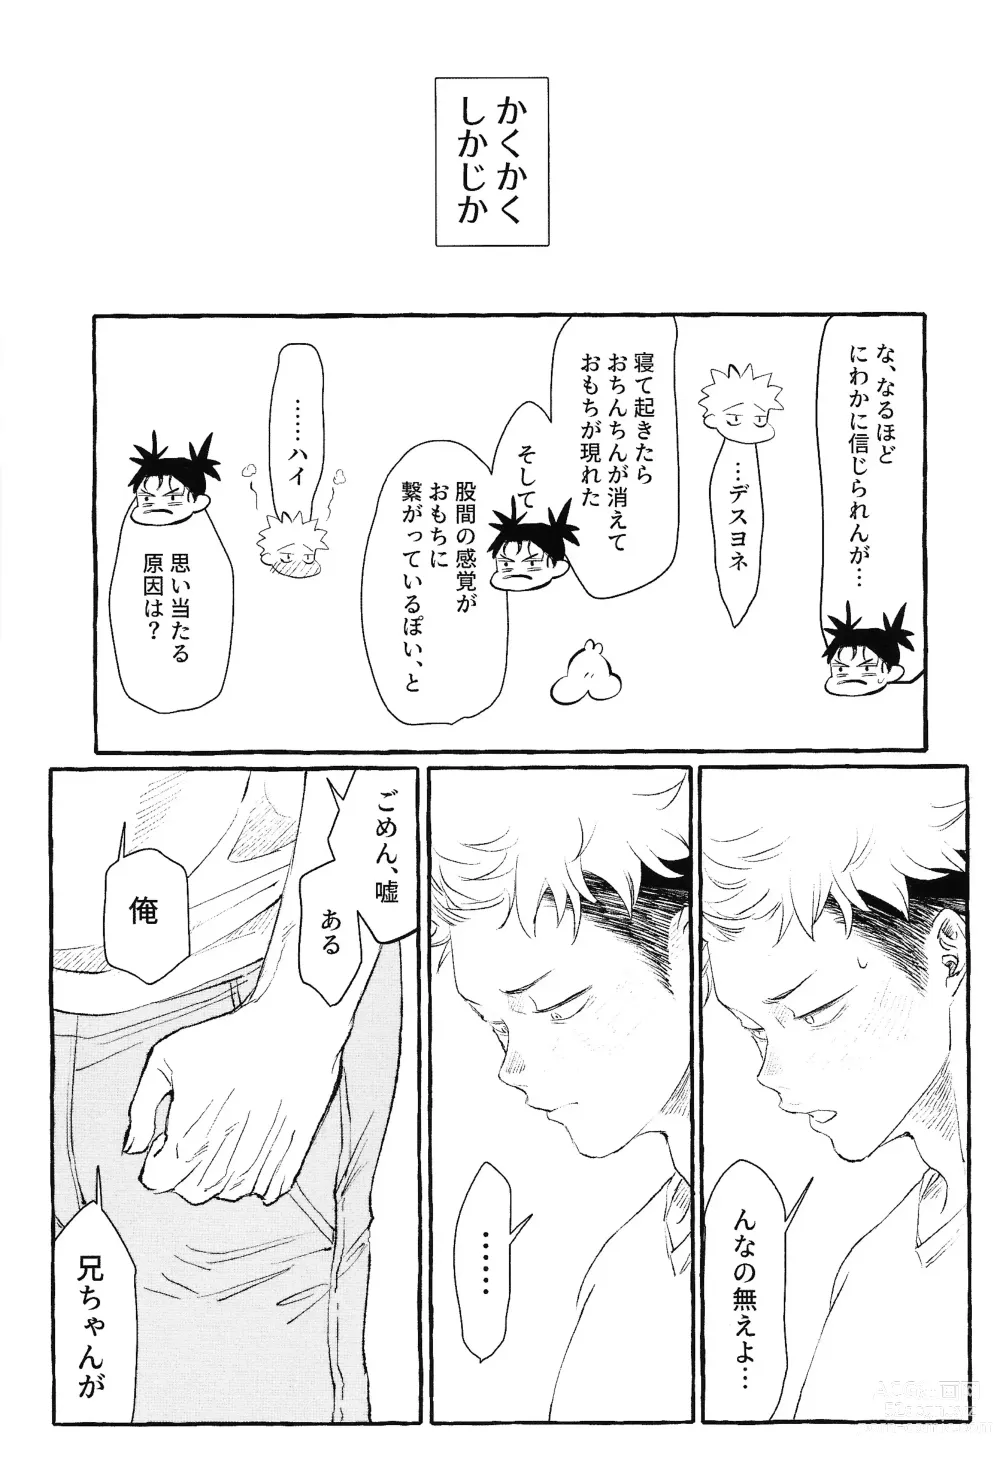 Page 39 of doujinshi Otouto no Kimochi